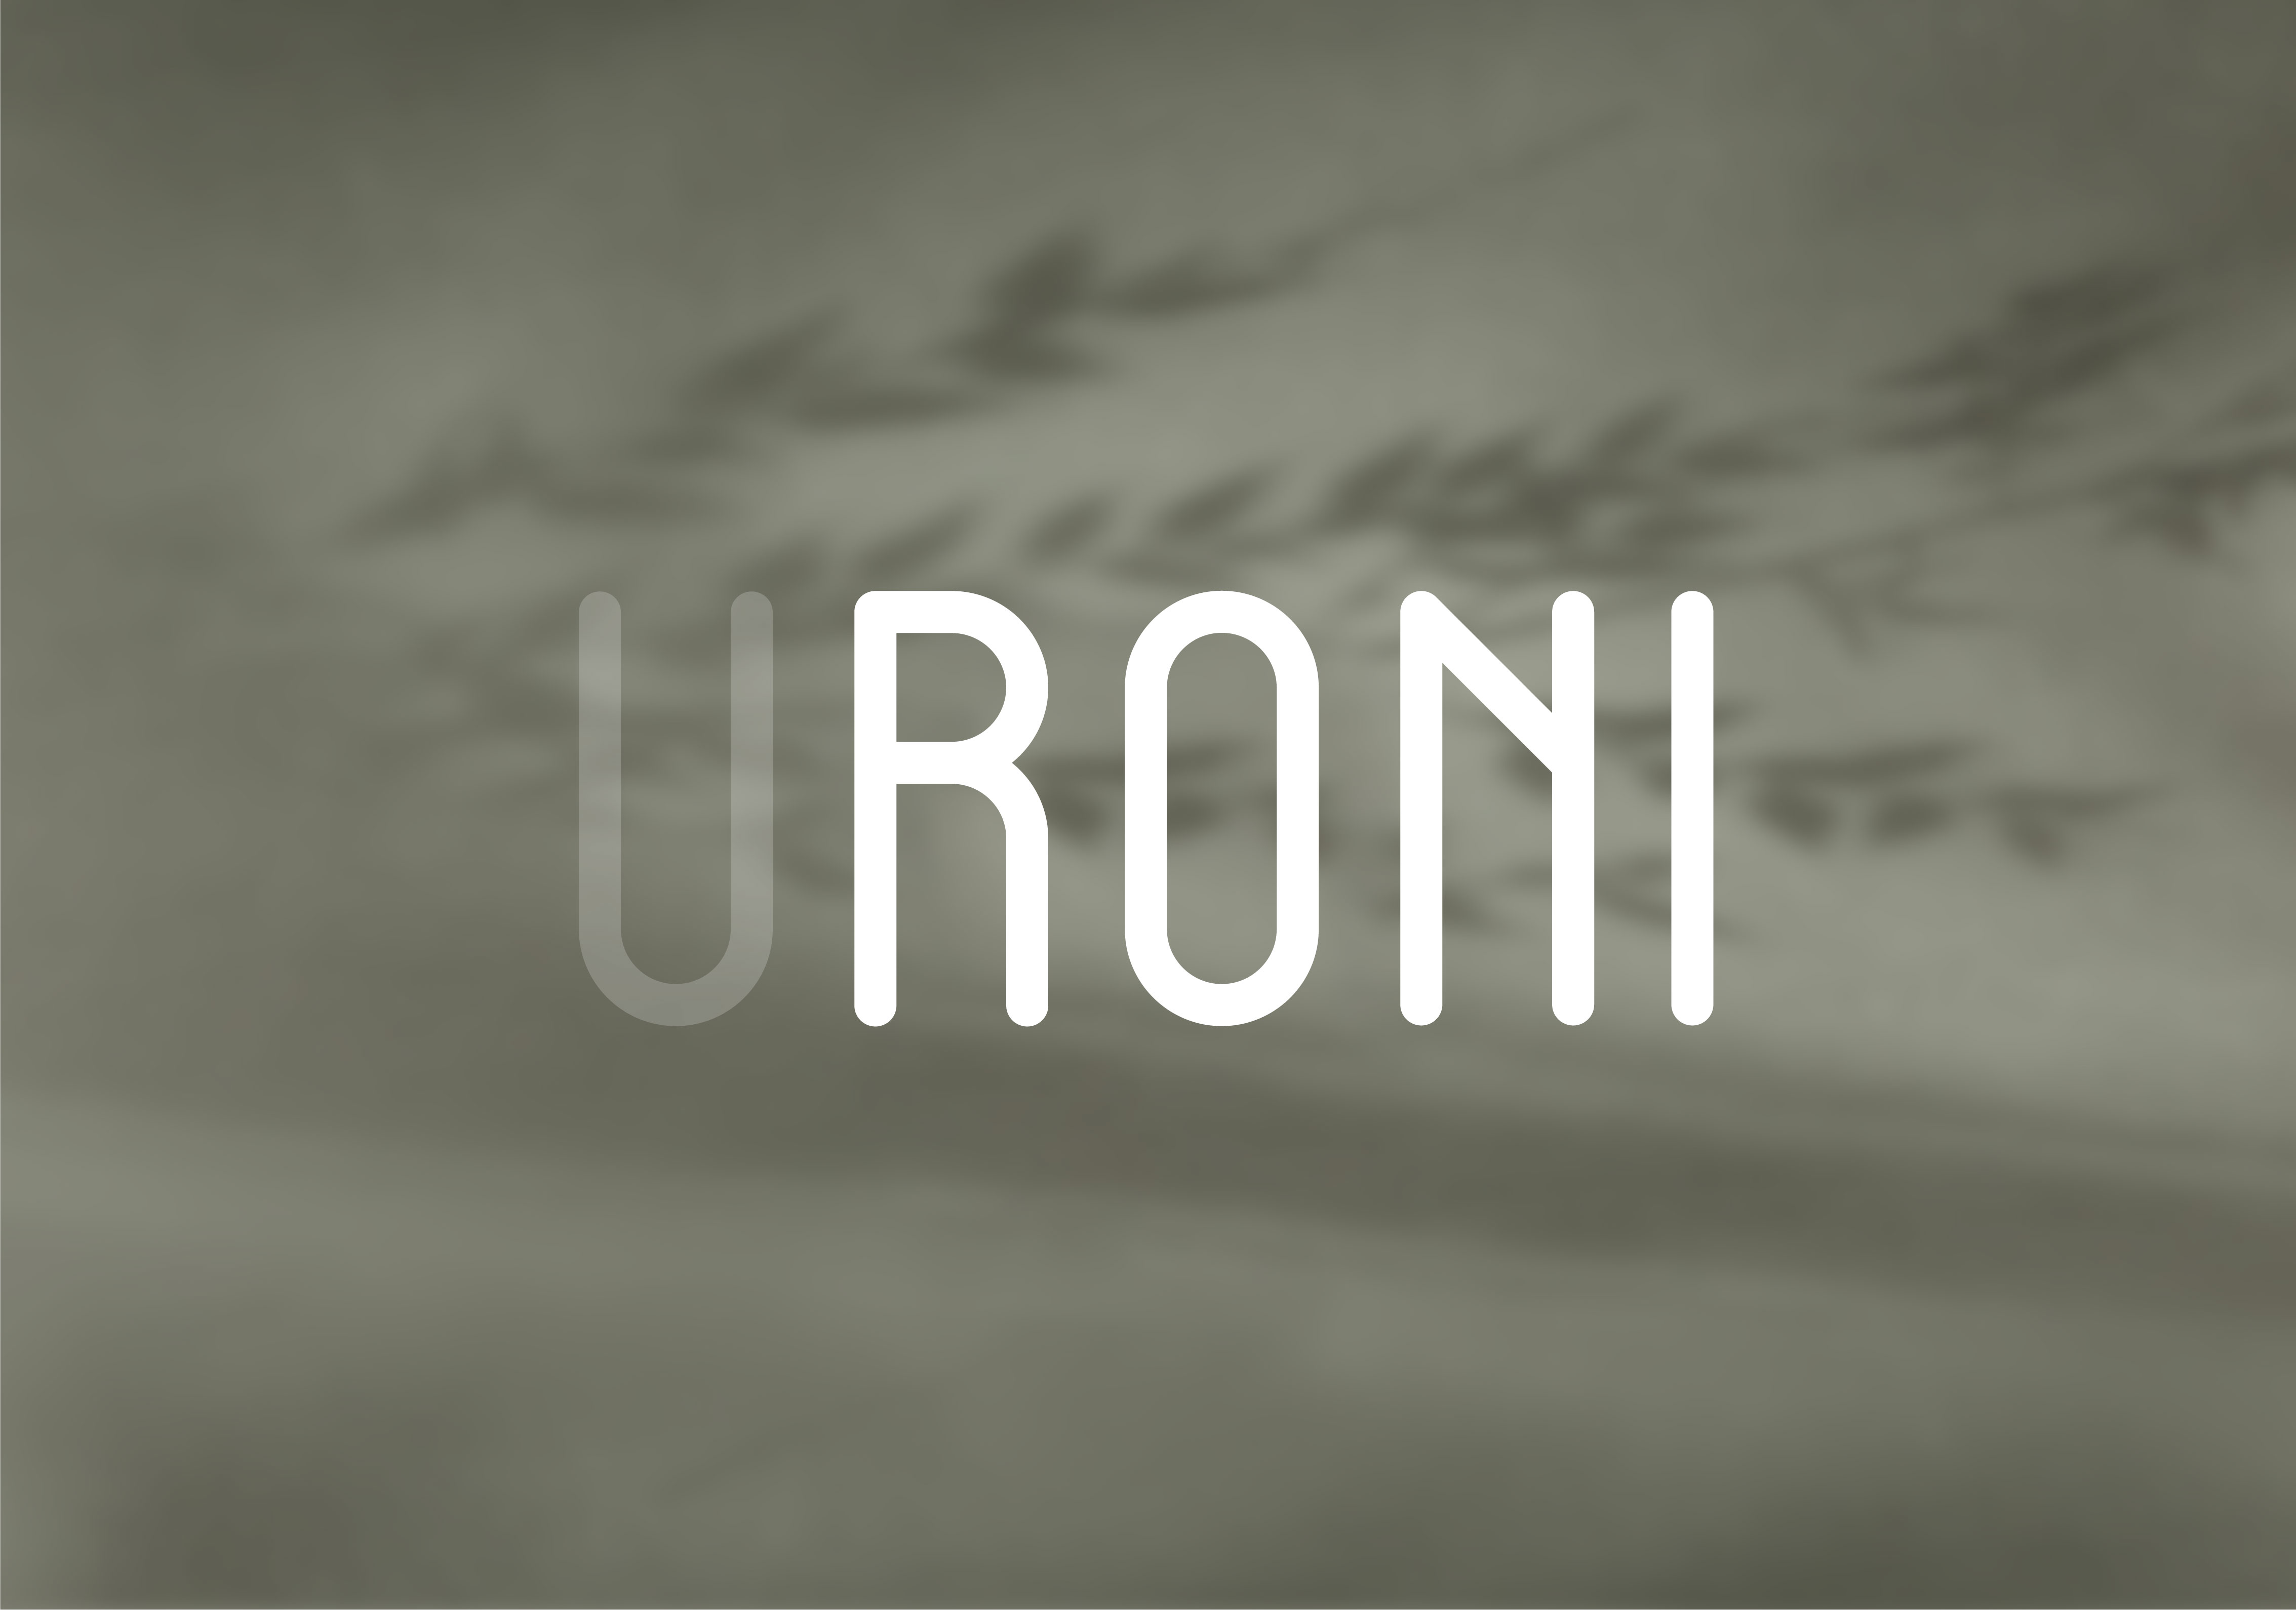 uroni-case-02